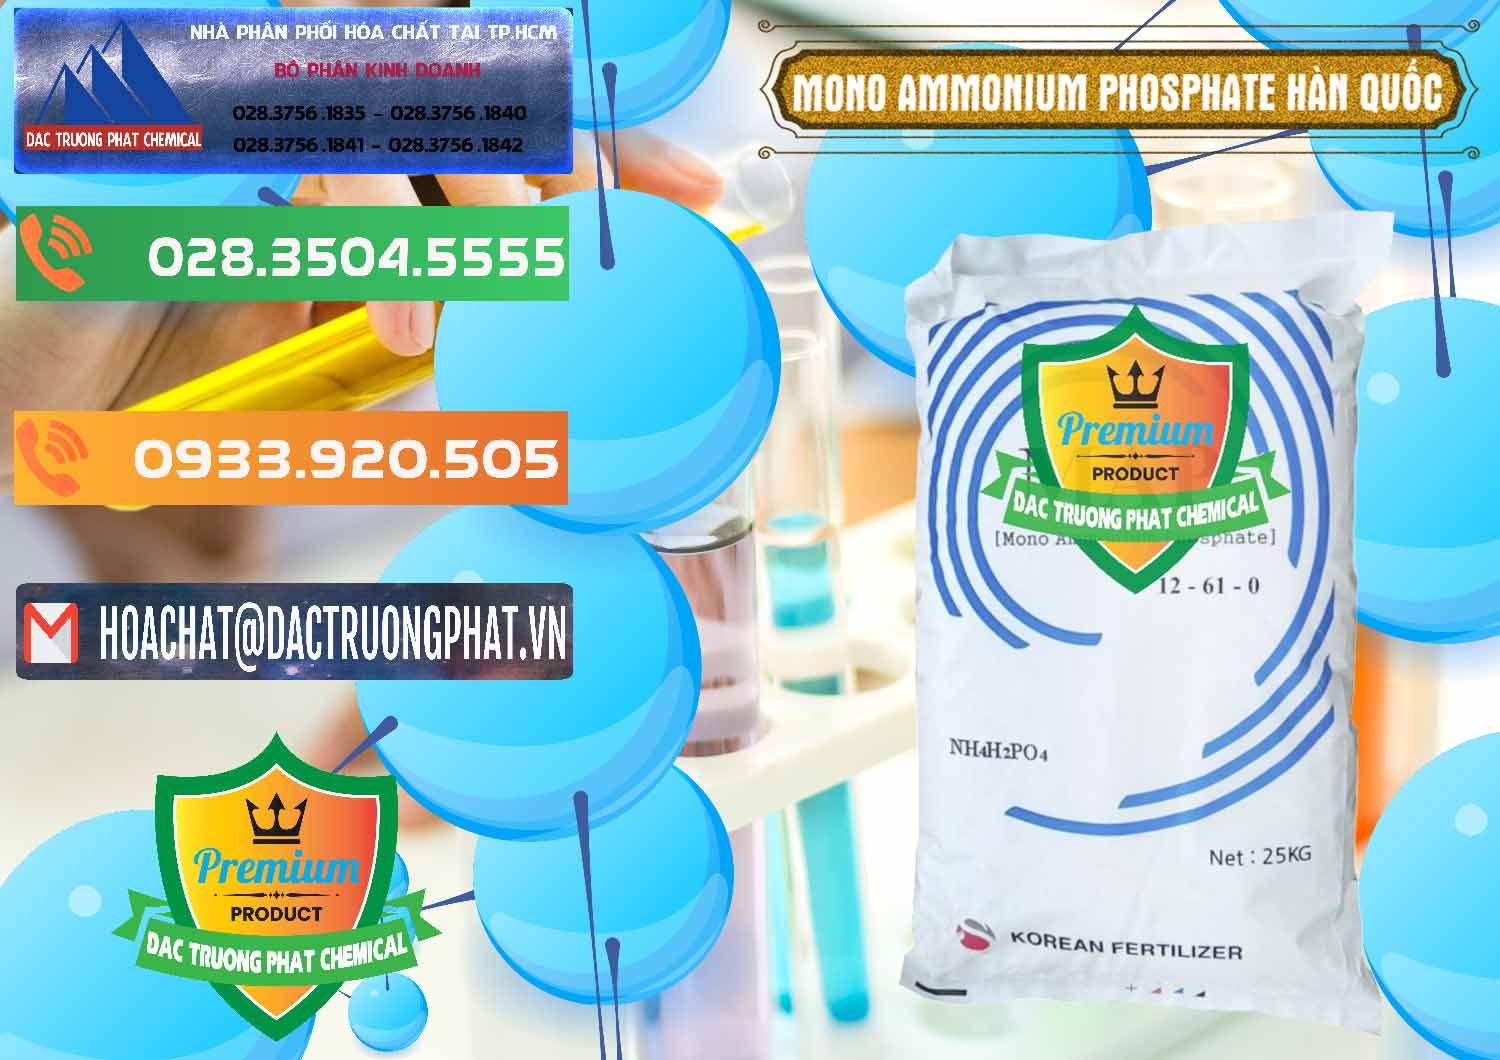 Cty chuyên bán & phân phối Mono Ammonium Phosphate - MAP 12-61-0 Hàn Quốc Korea - 0392 - Công ty cung cấp - bán hóa chất tại TP.HCM - hoachatxulynuoc.com.vn